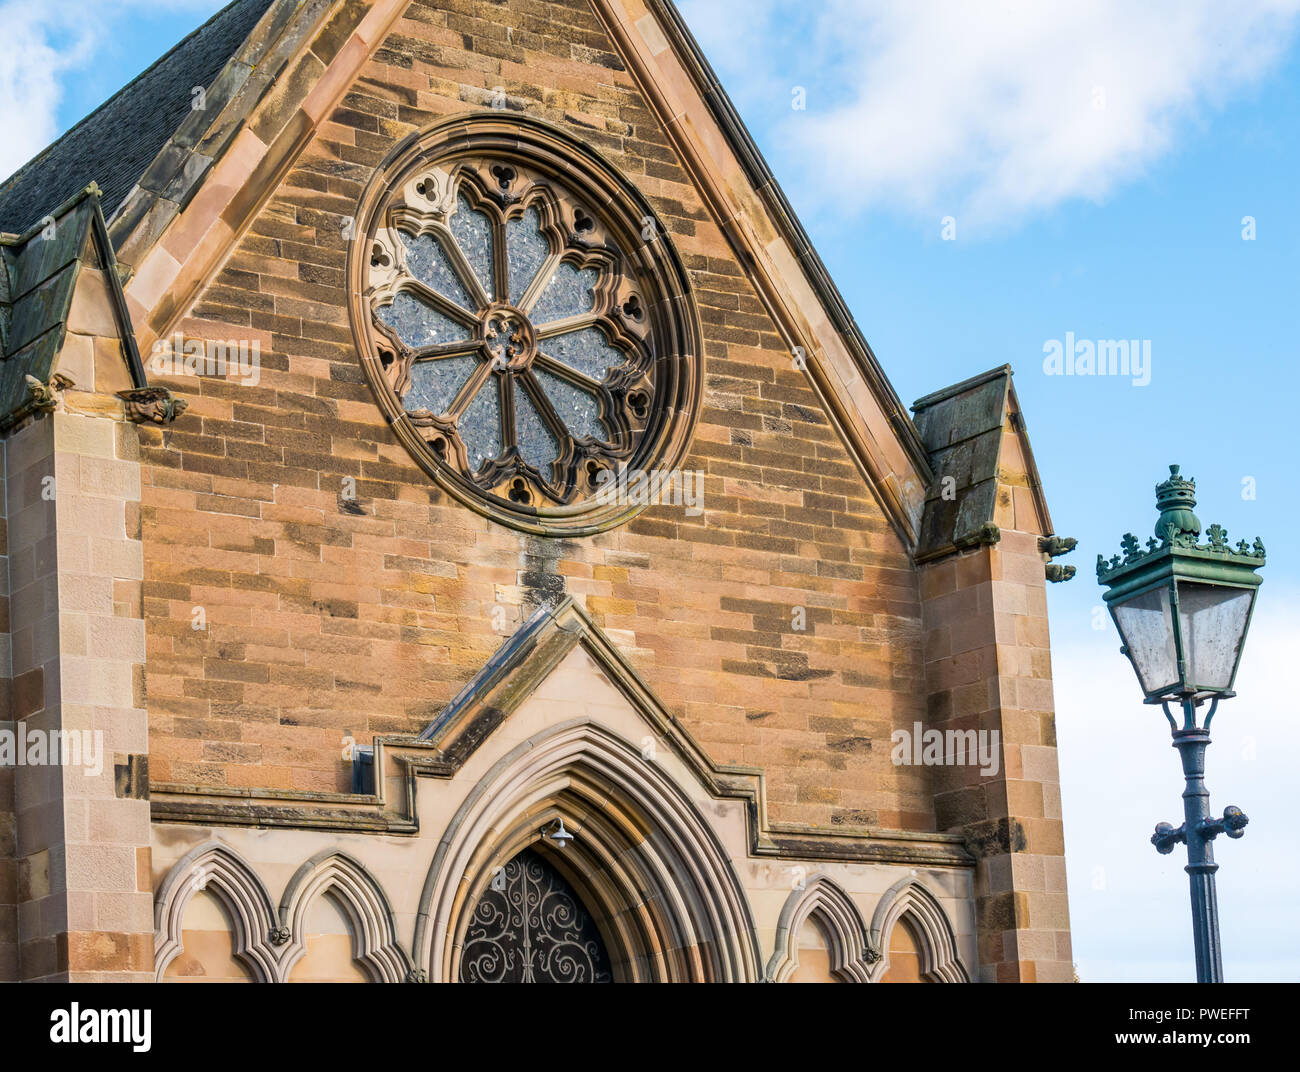 Sandstein viktorianischen St. Mary's Episcopal Church mit altmodischen Strassenlaterne, Dalkeith, Midlothian, Schottland, Großbritannien Stockfoto